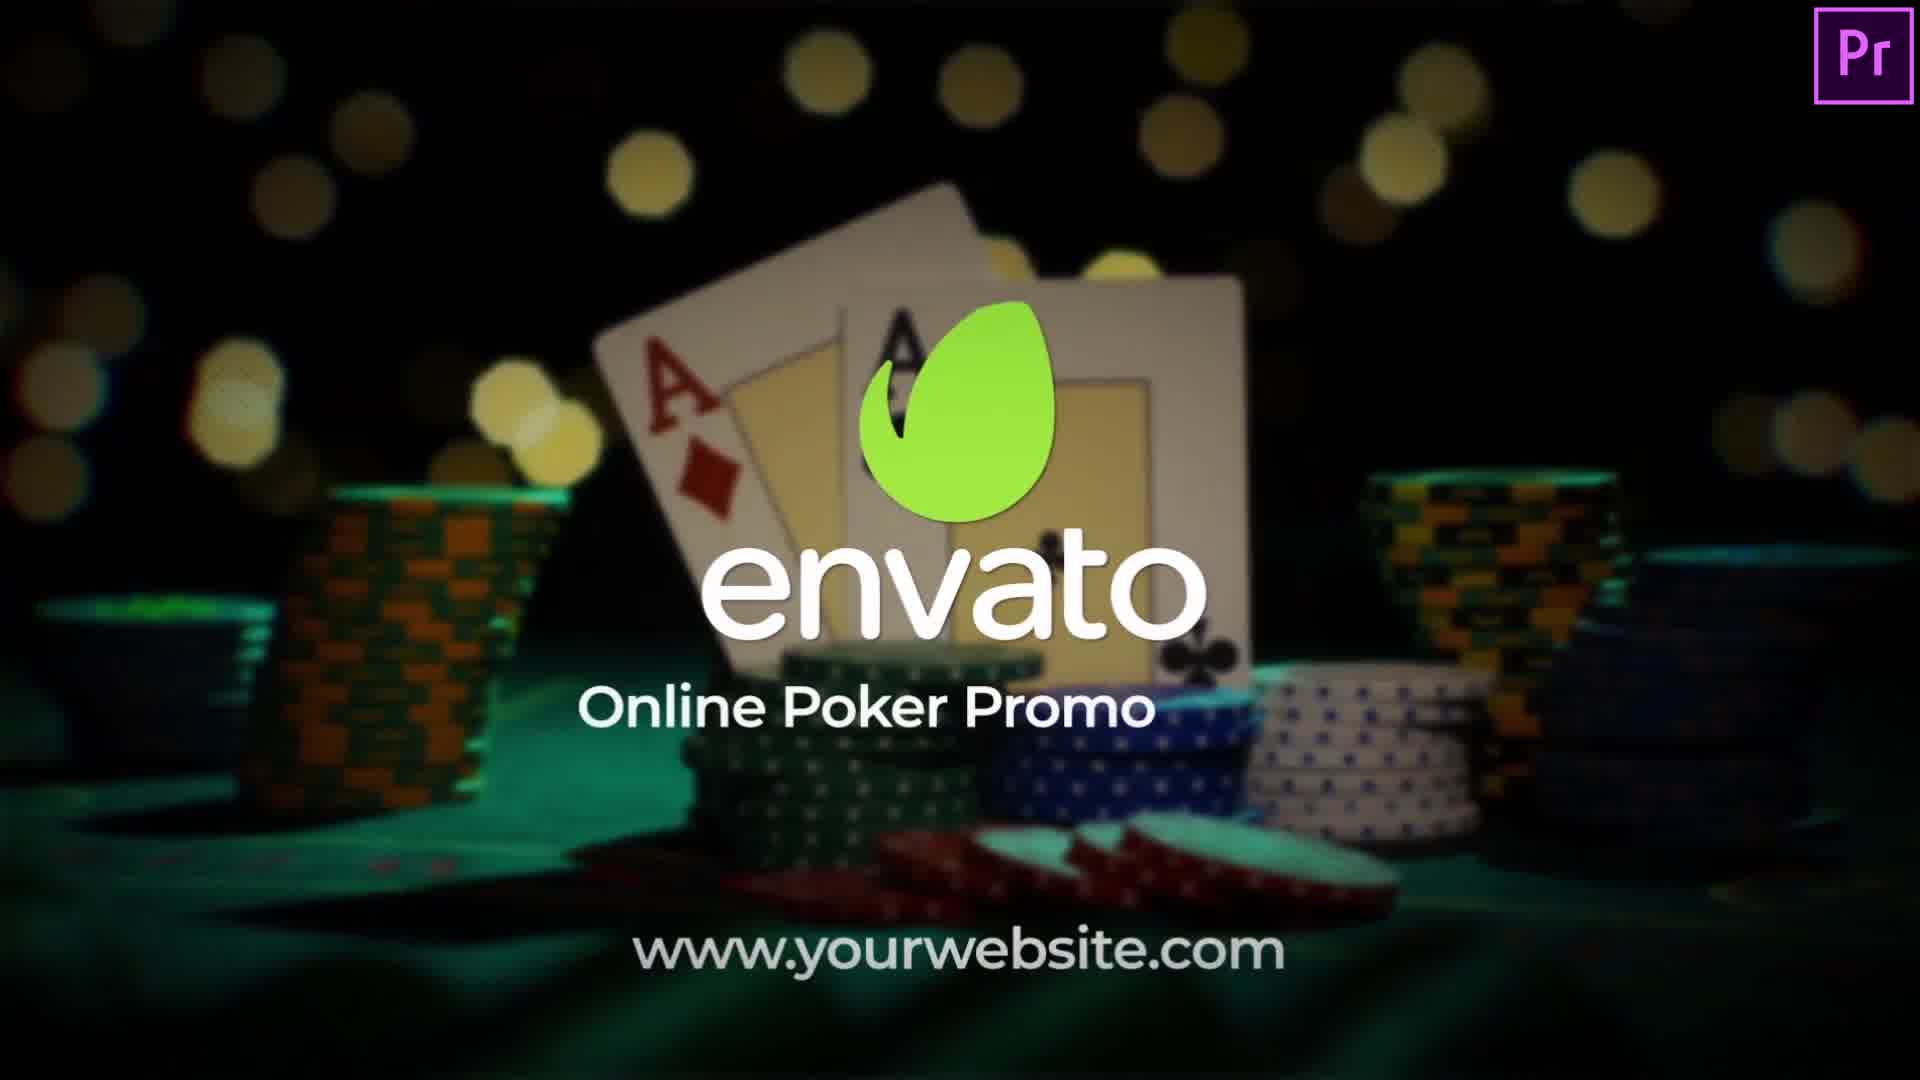 Online Poker App Promo & Poker Intro Premiere Pro Videohive 33975402 Premiere Pro Image 11